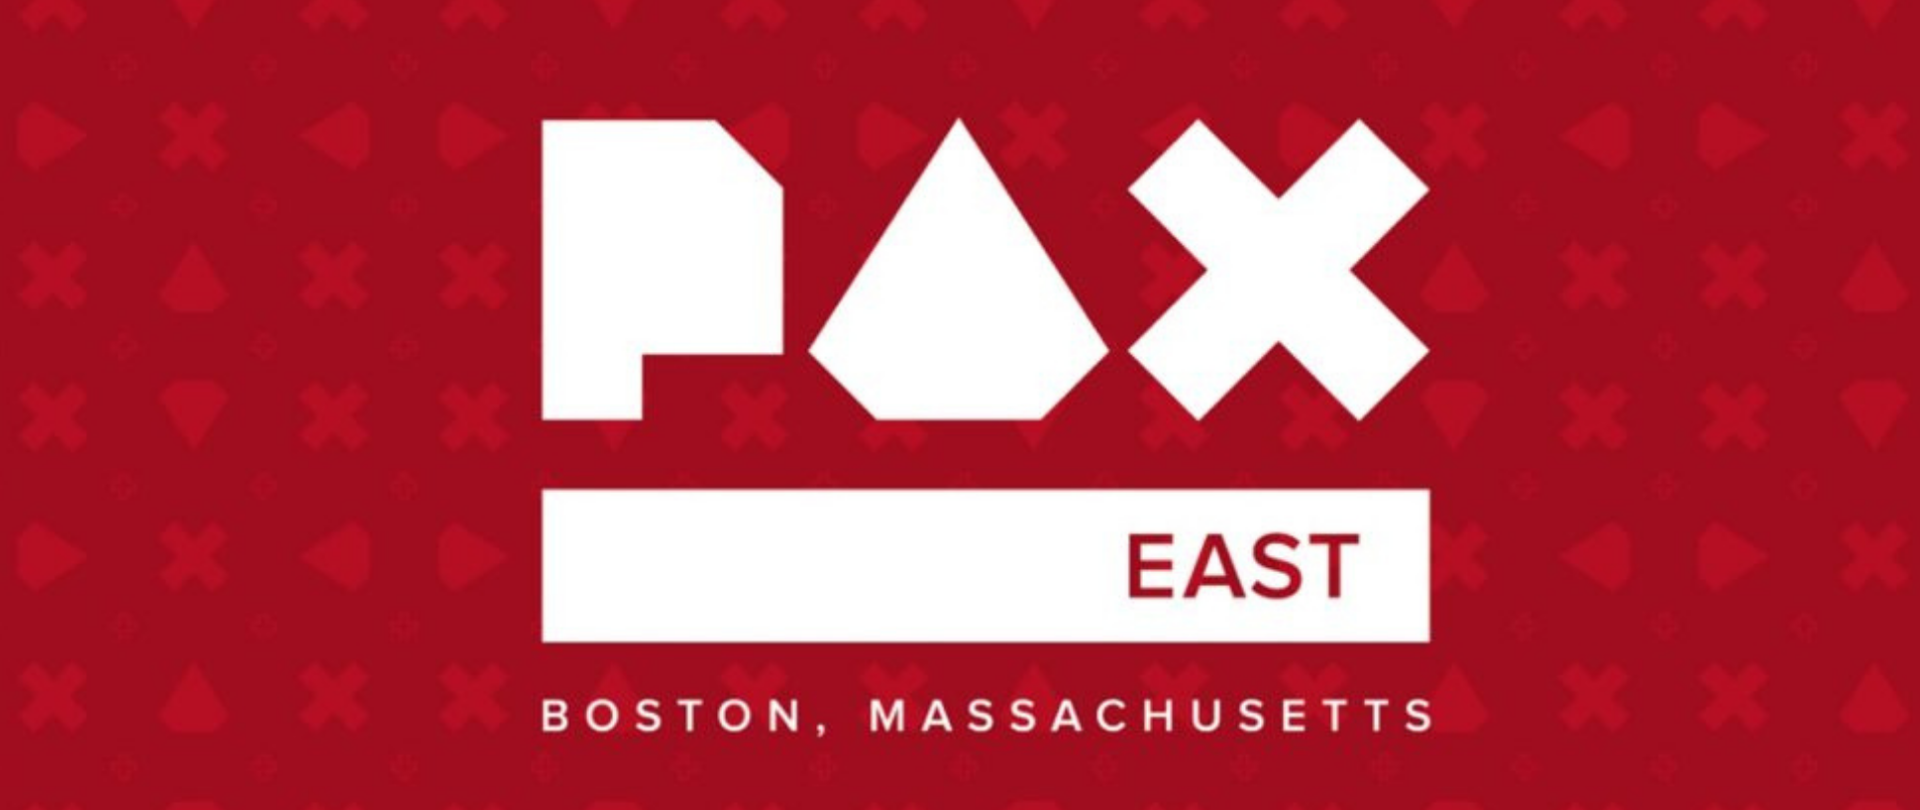 PAX EAST
BOSTON, MASSACHUSETTS